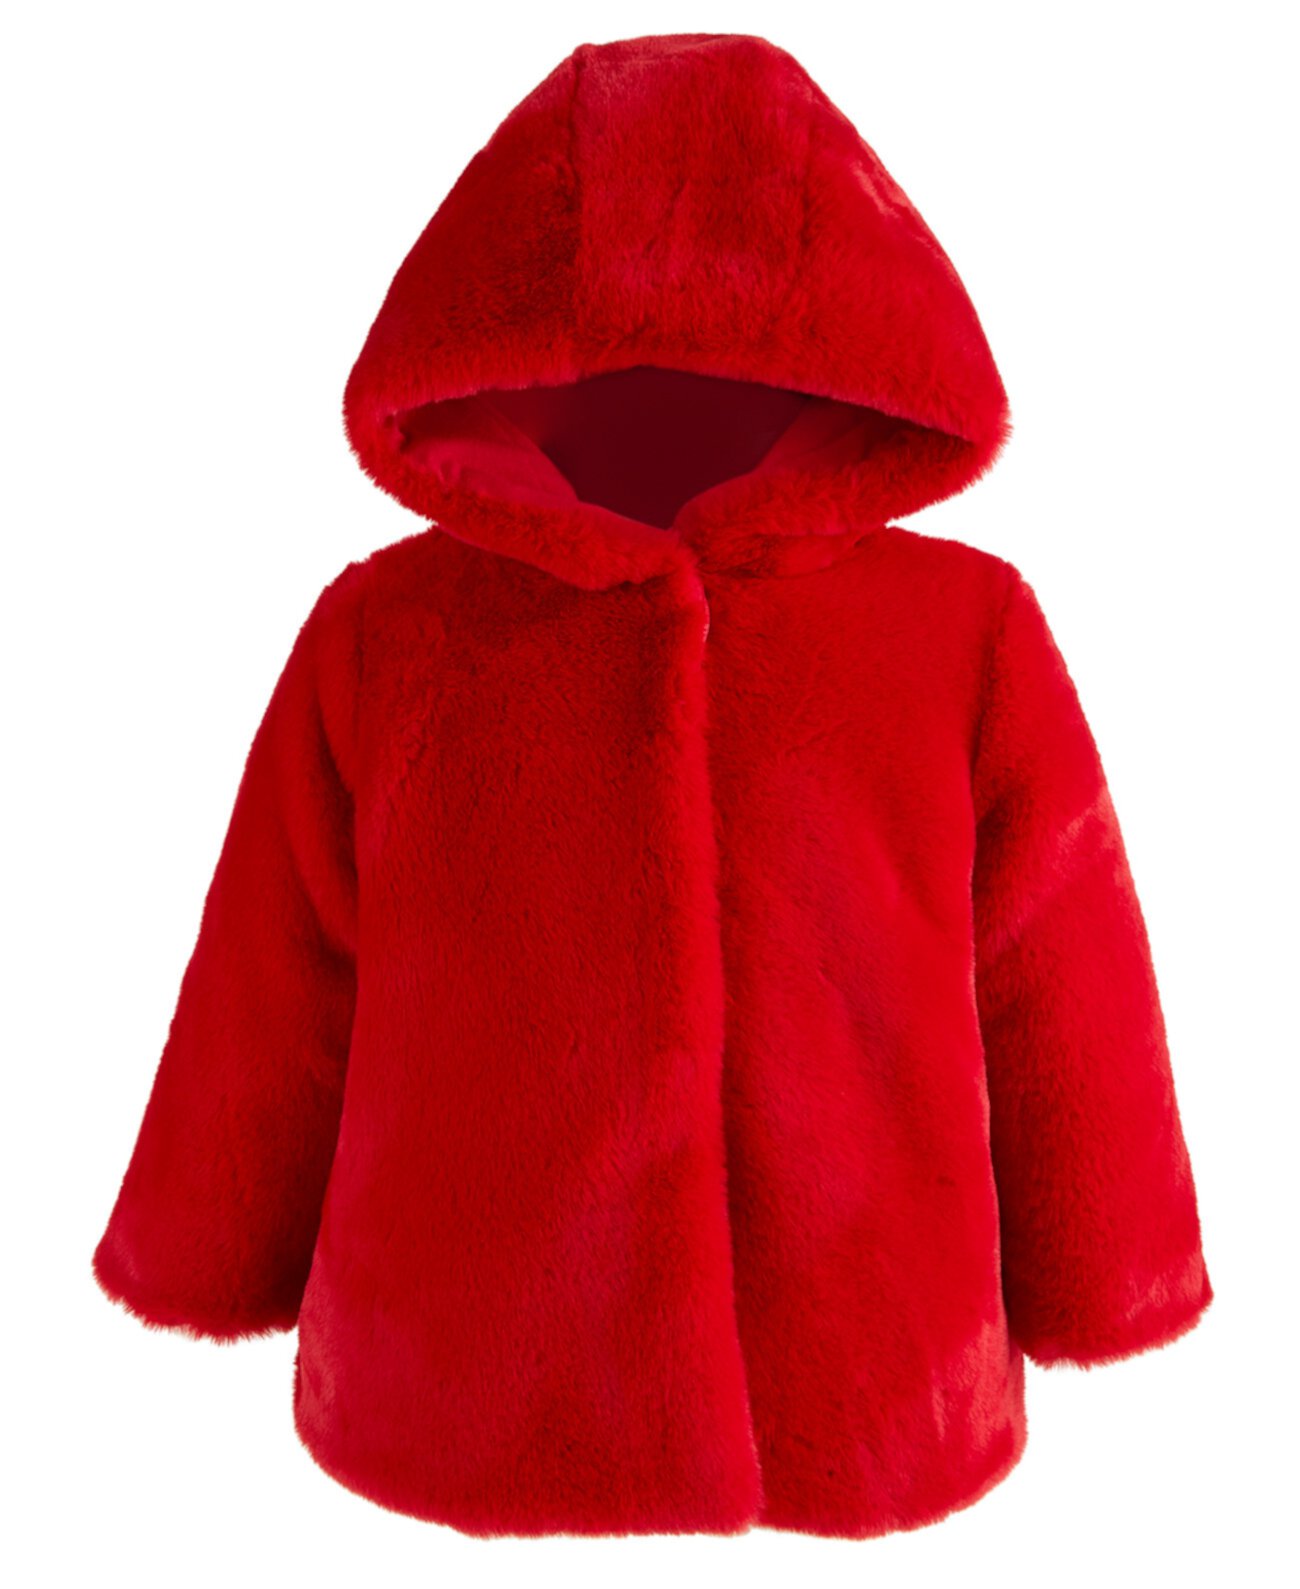 Эффектное пальто для новорожденных девочек, созданное для Macy's First Impressions